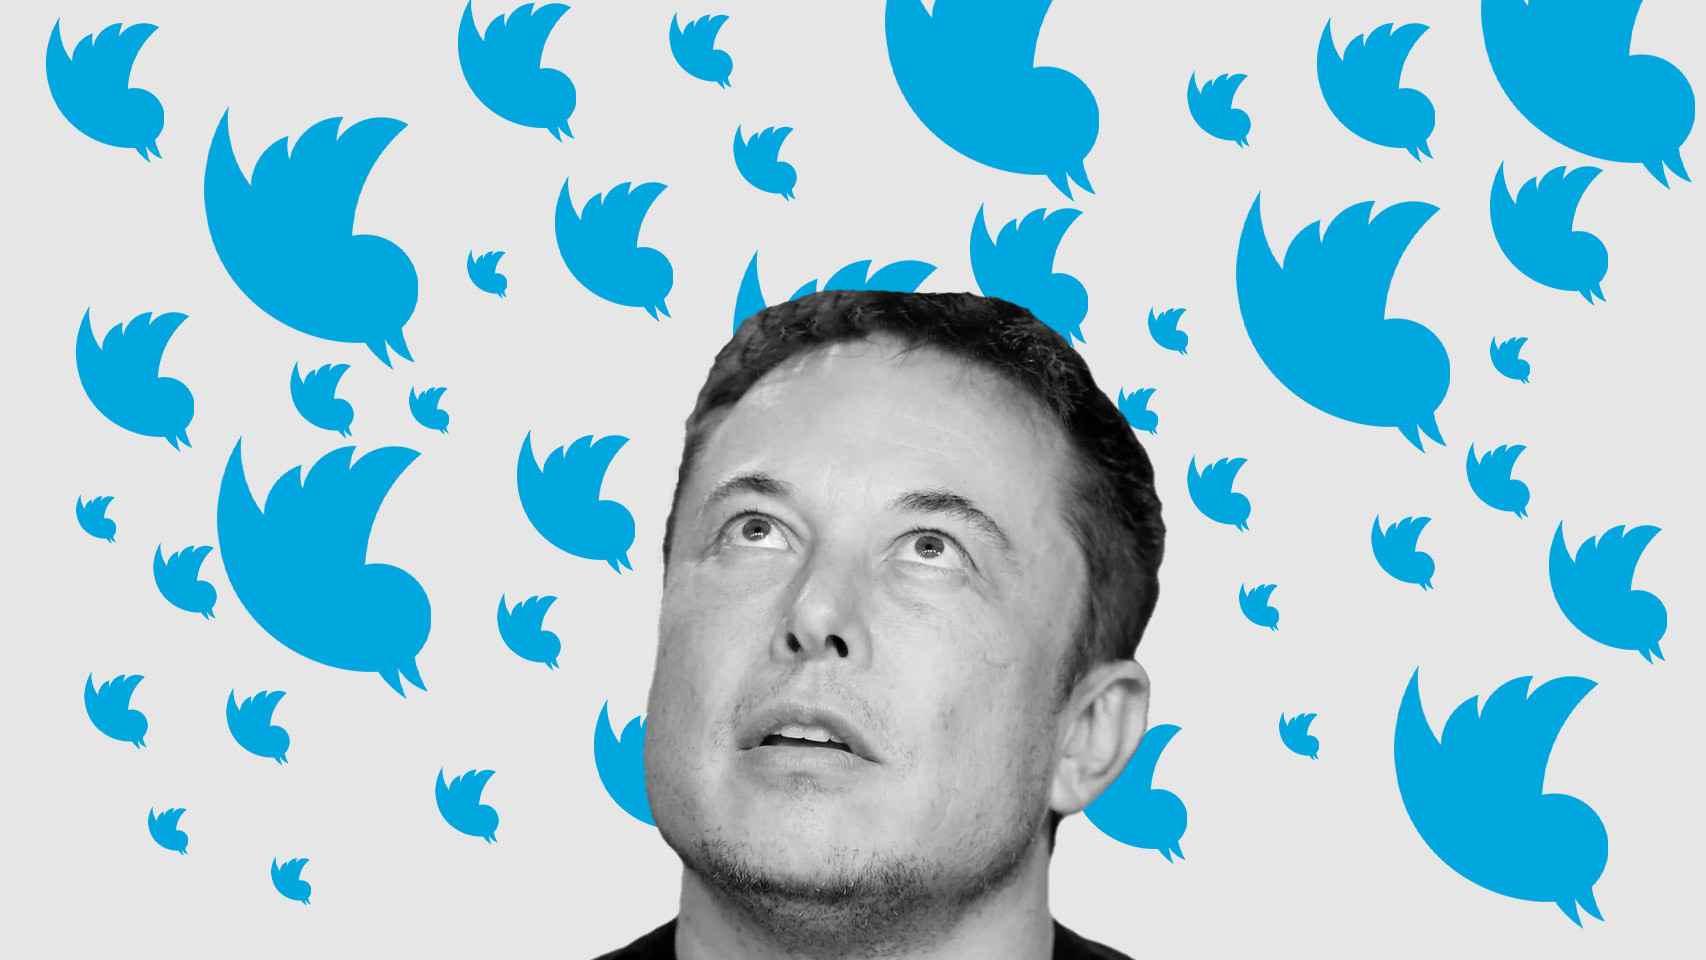 Fotomontaje con la cara de Musk y logos de Twitter cayendo.